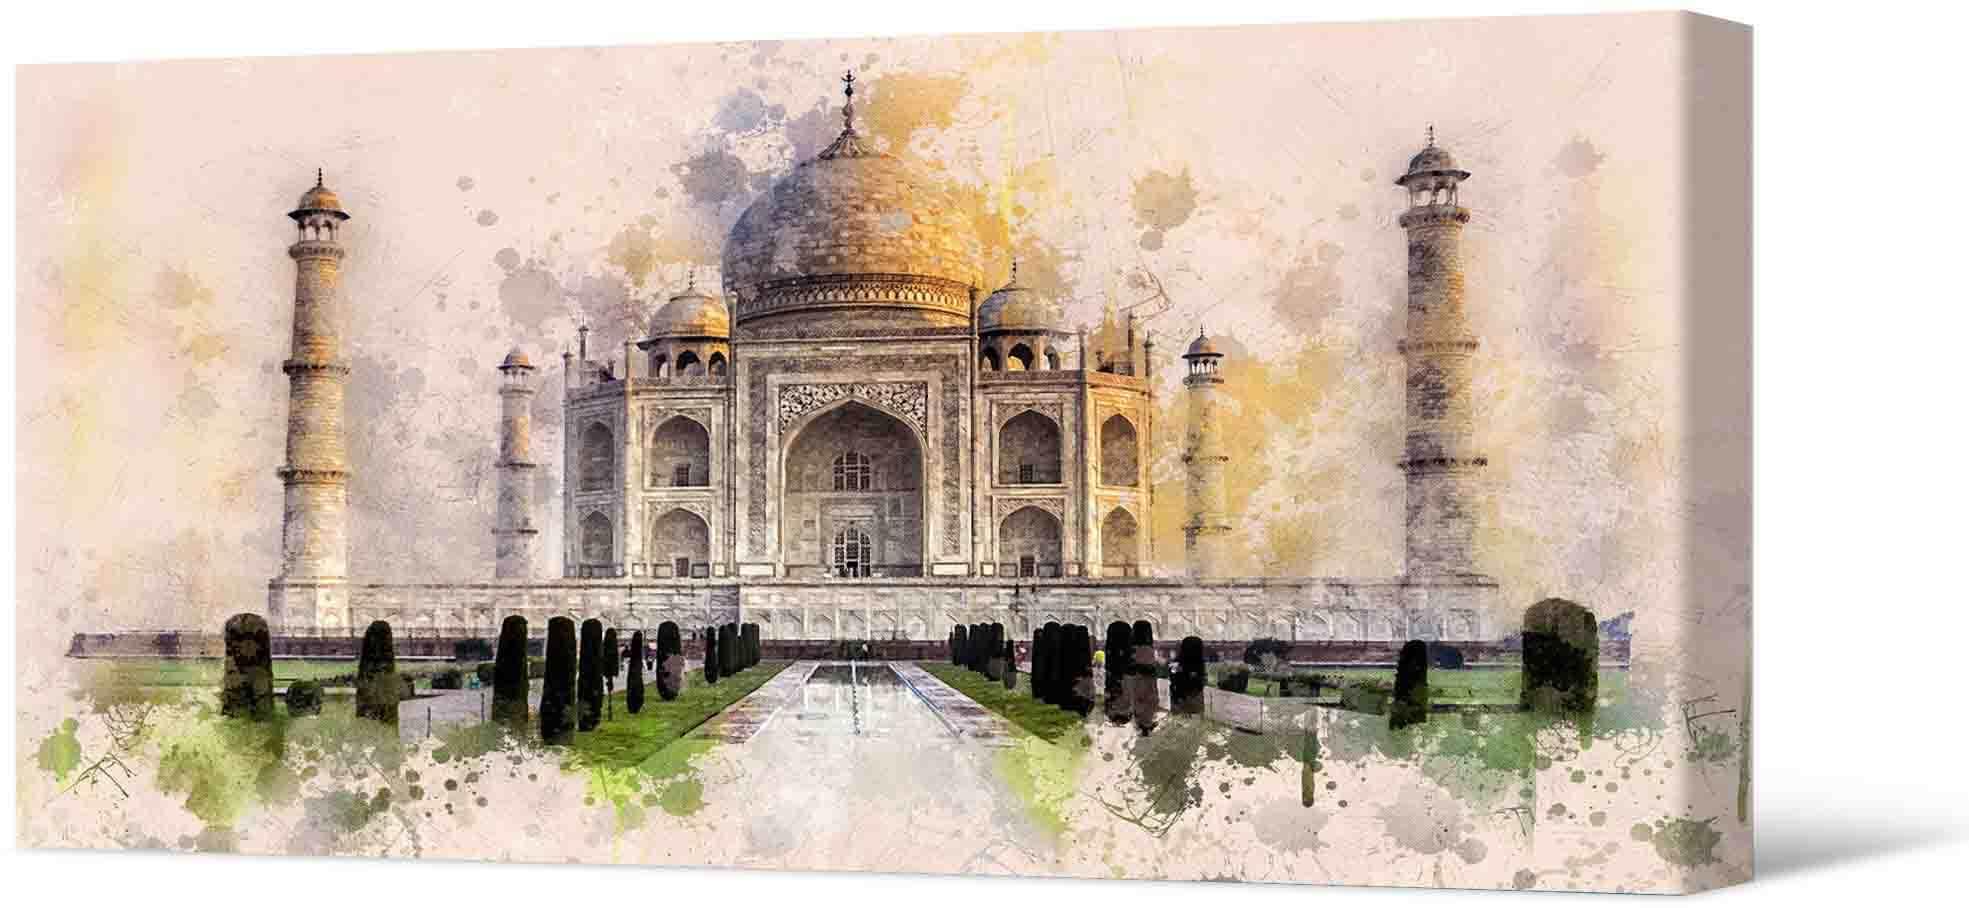 Pilt Fototata le canvas dzi - Taj Mahal wɔnuku aɖe